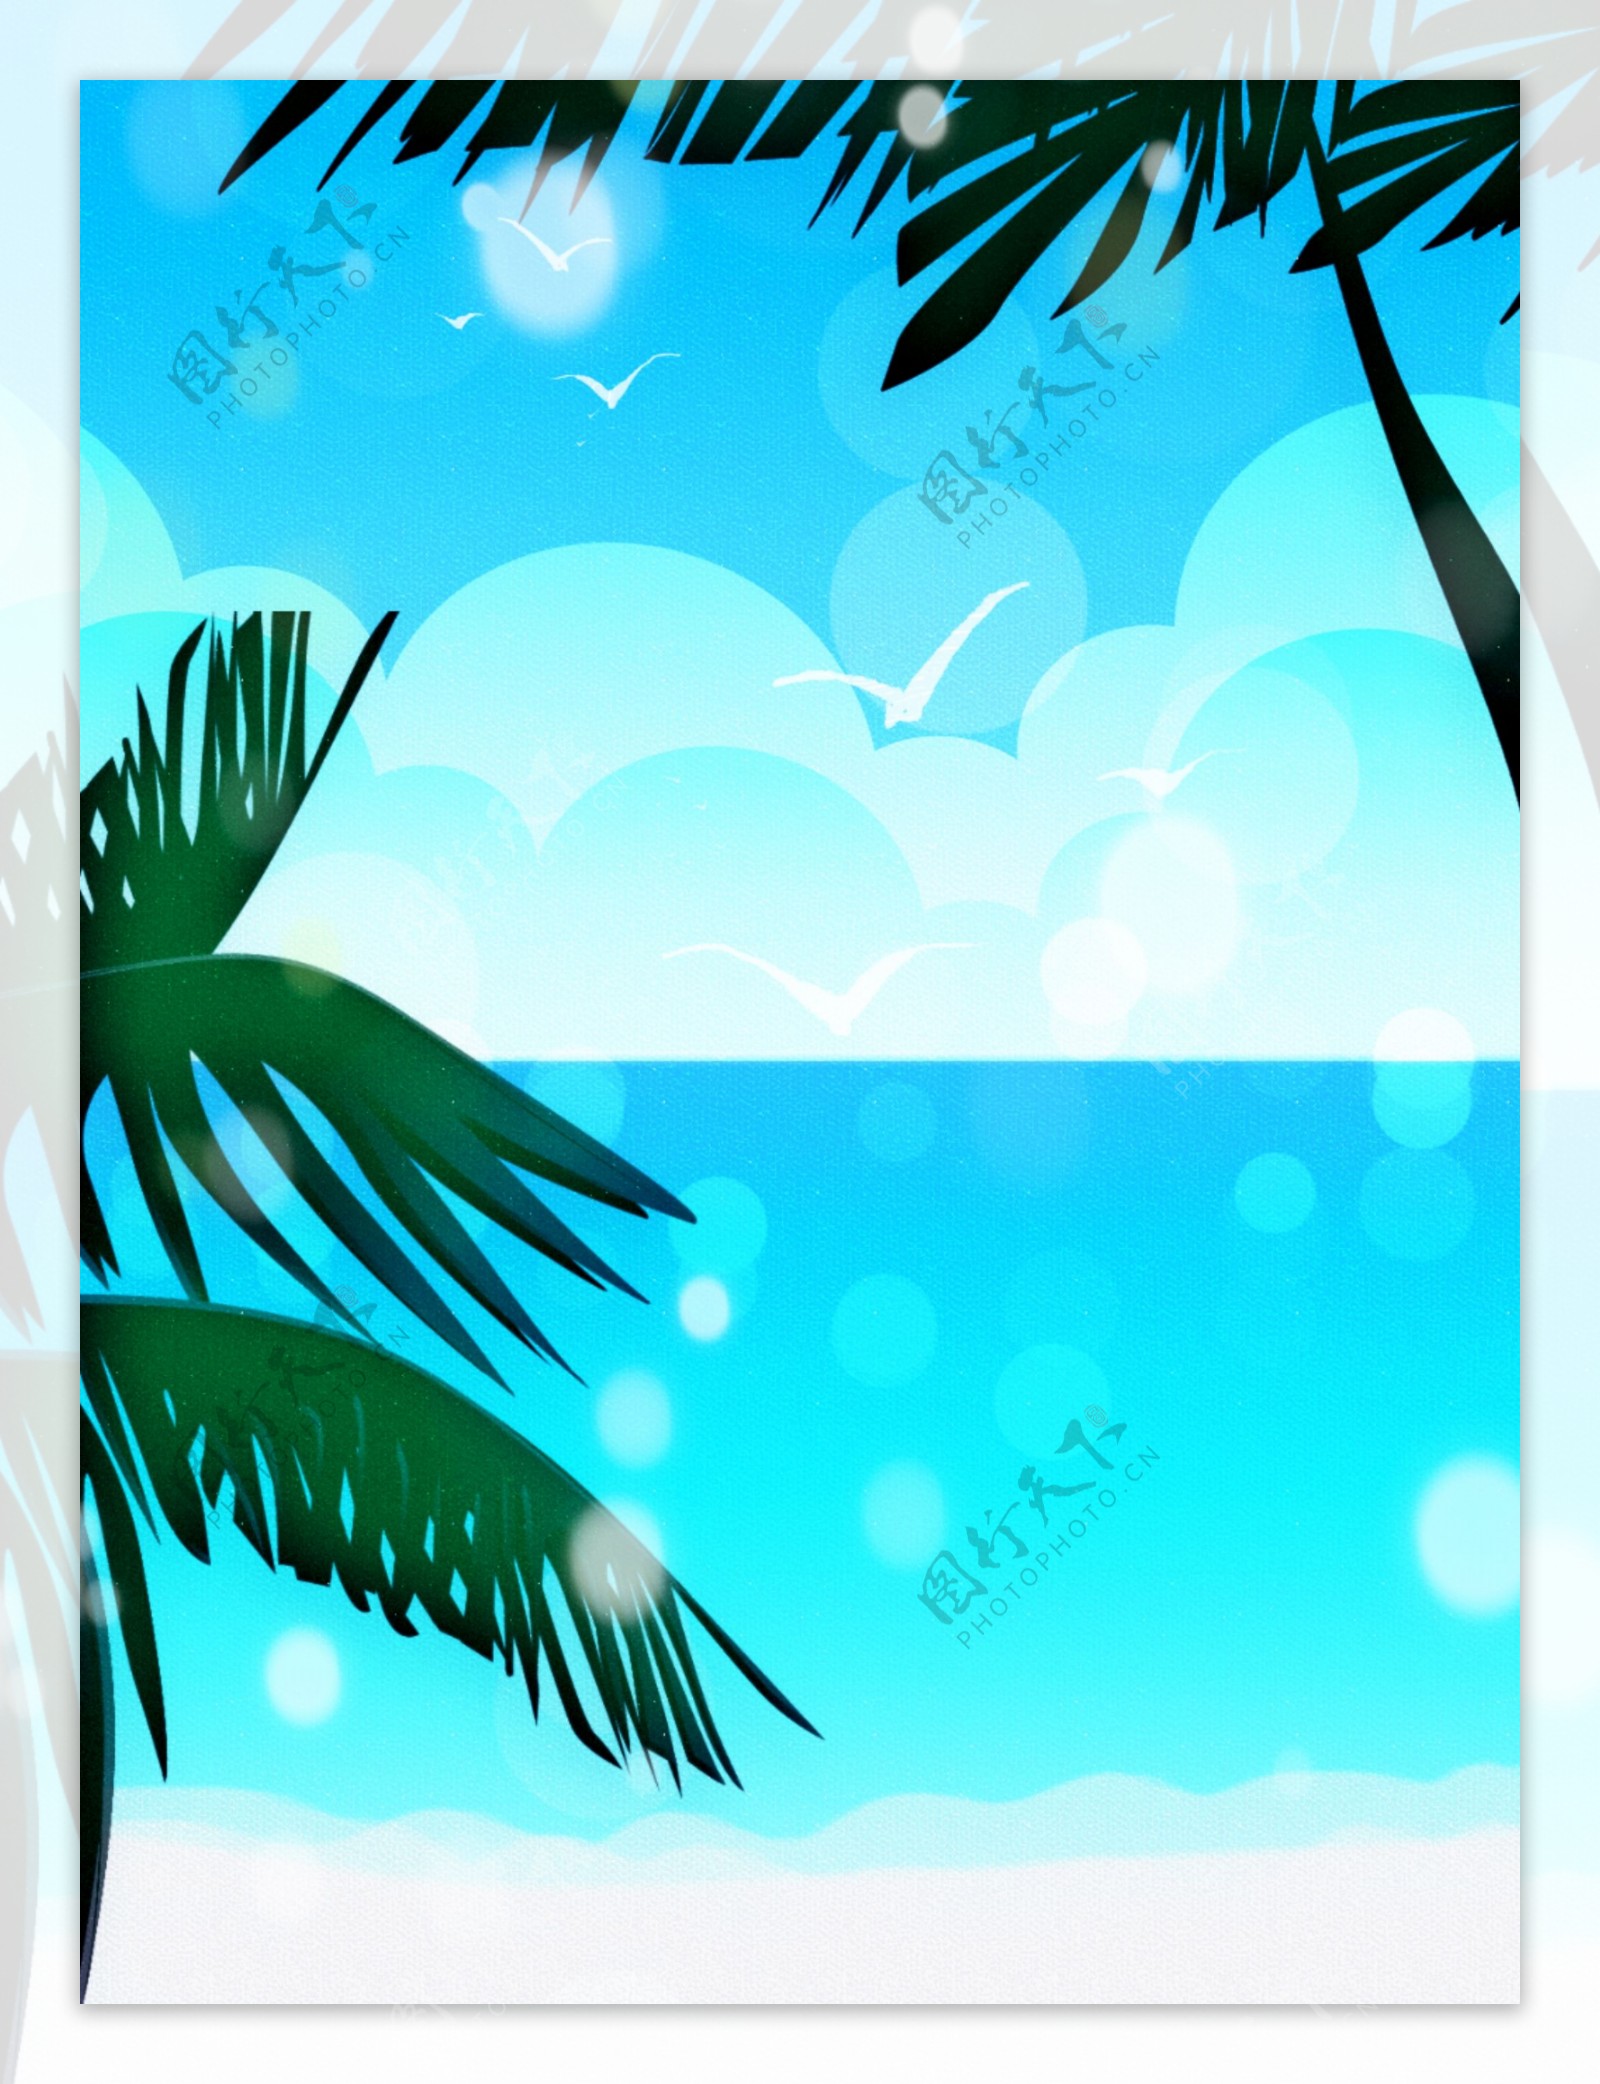 简约小清新手绘蓝天白云海边沙滩背景